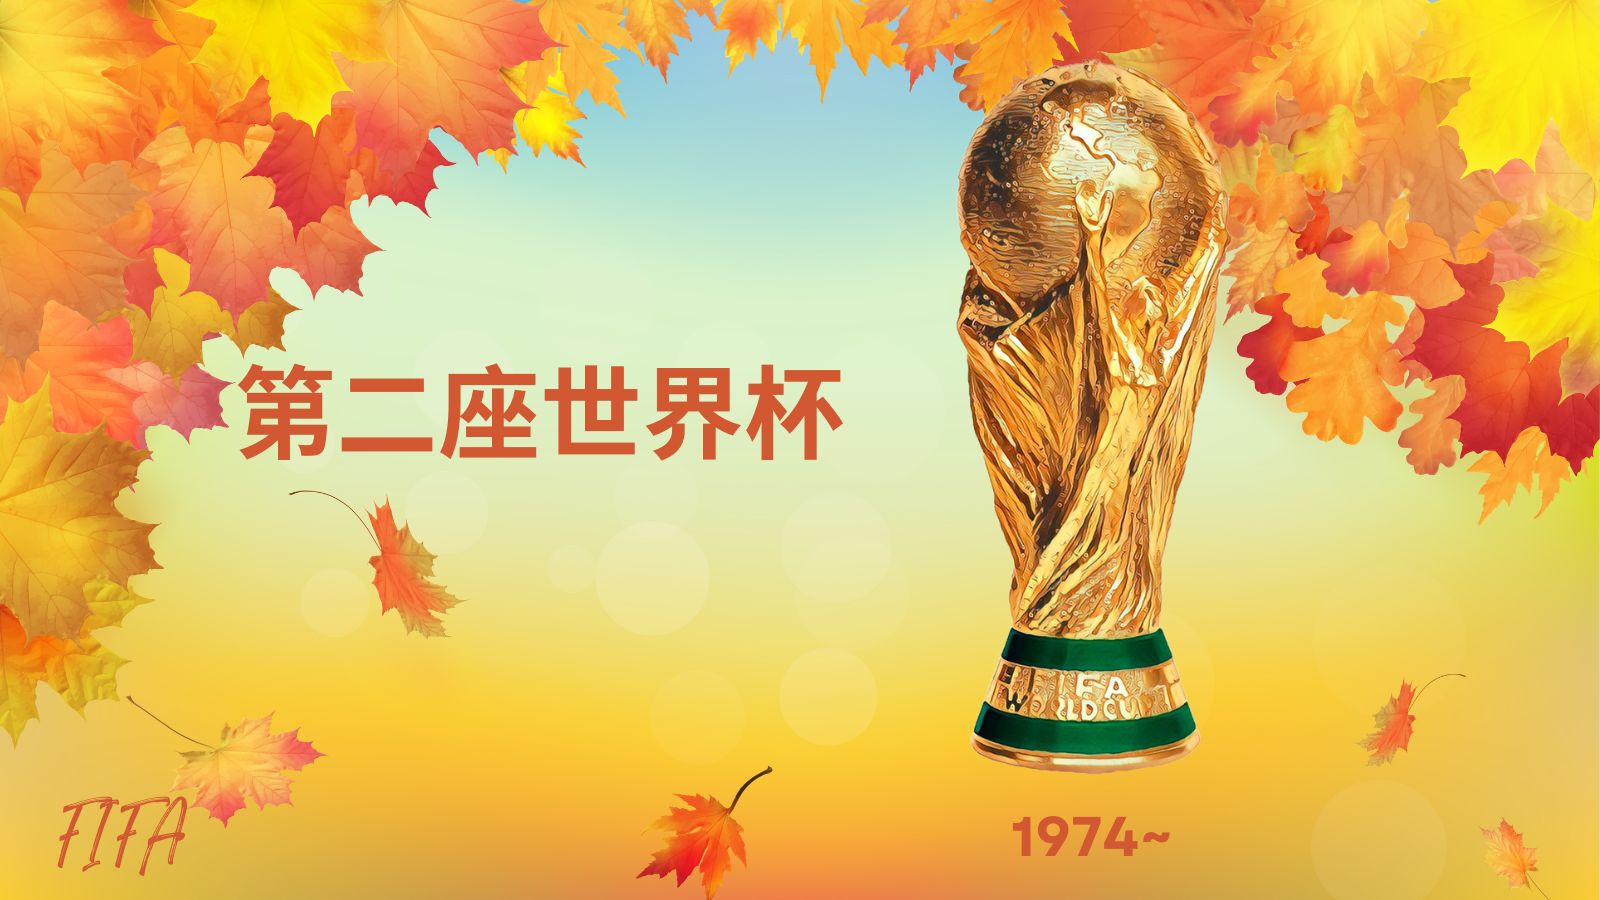 国际足联第二座世界杯注册商标